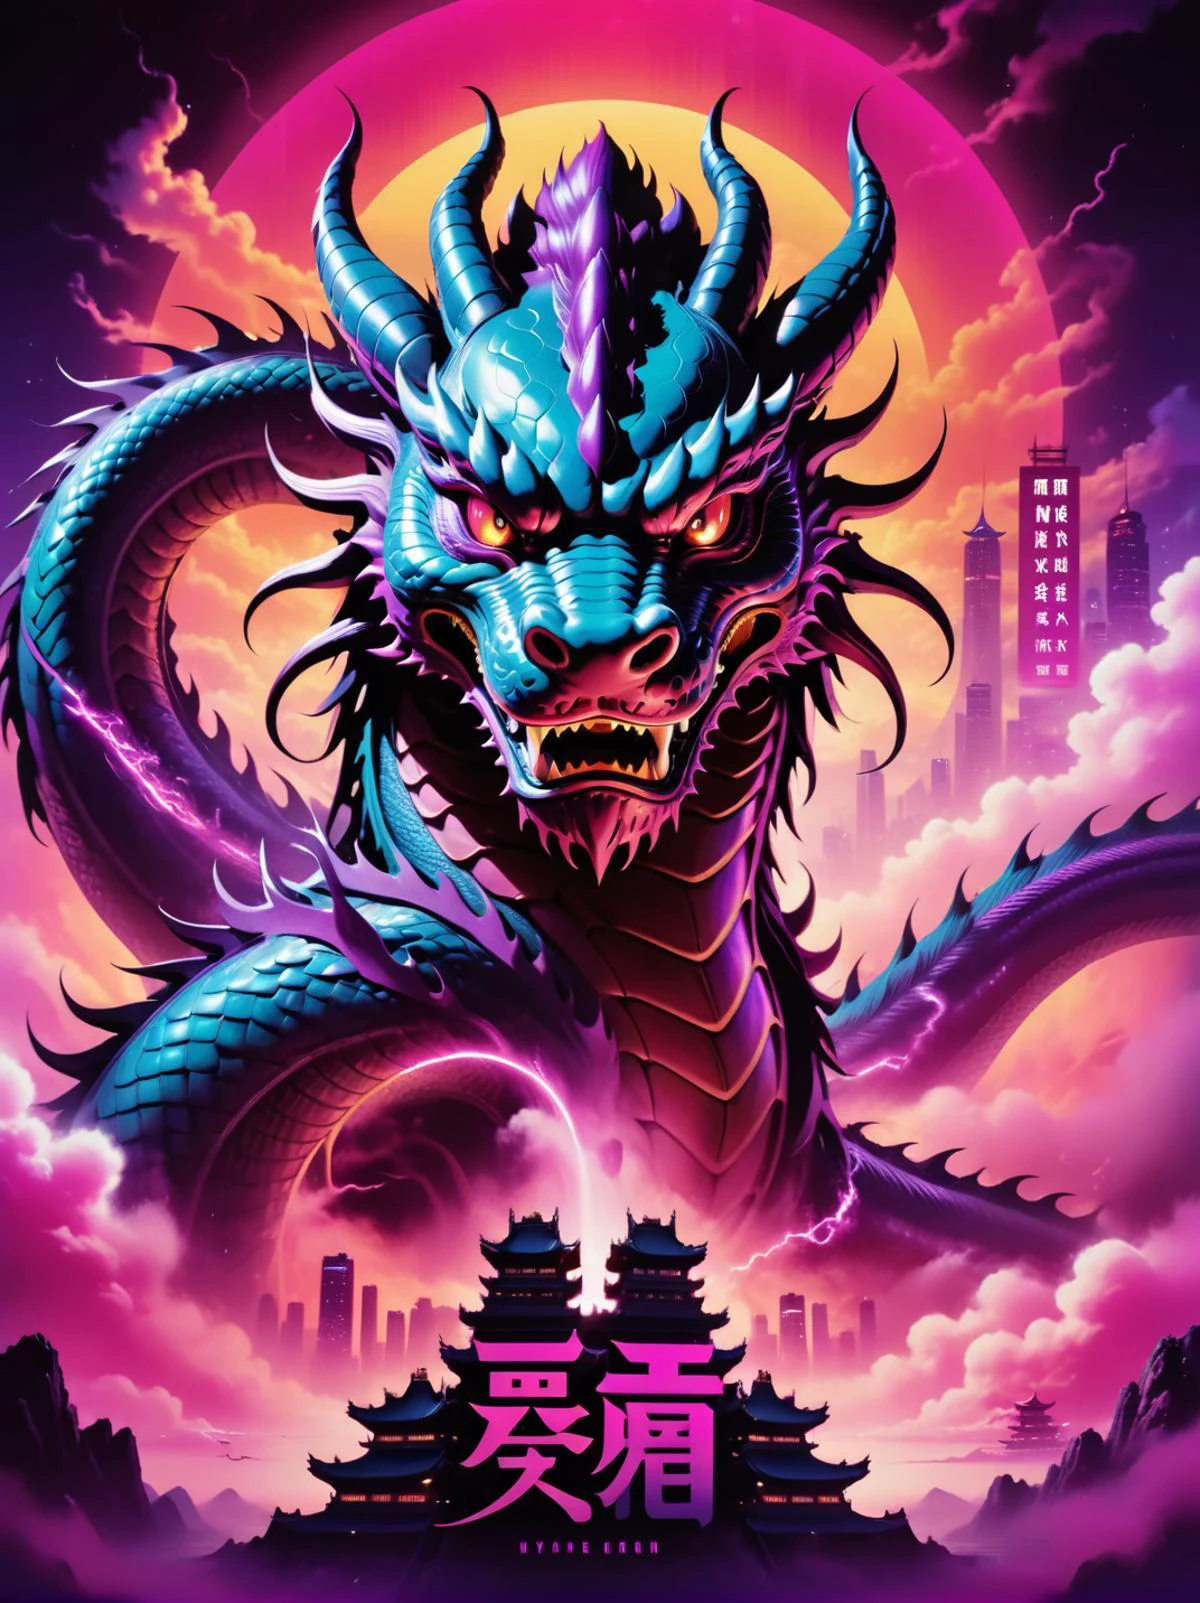 Neónpunk style movie poster),(texto chino, "Año del dragón"),(con un dragón chino, cielo, Volador), ciberpunk, onda de vapor, Neón, vibras, vibrante, deslumbrantemente bella, crujiente, detallado, pulcro, moderno, reflejos magenta, sombras de color púrpura oscuro, alto contraste, cinematográfico, ultra detallado, Intrincado, profesional, Fantasía, emocionante, diseño de camiseta dinámica, CamisetaDiseñoAF